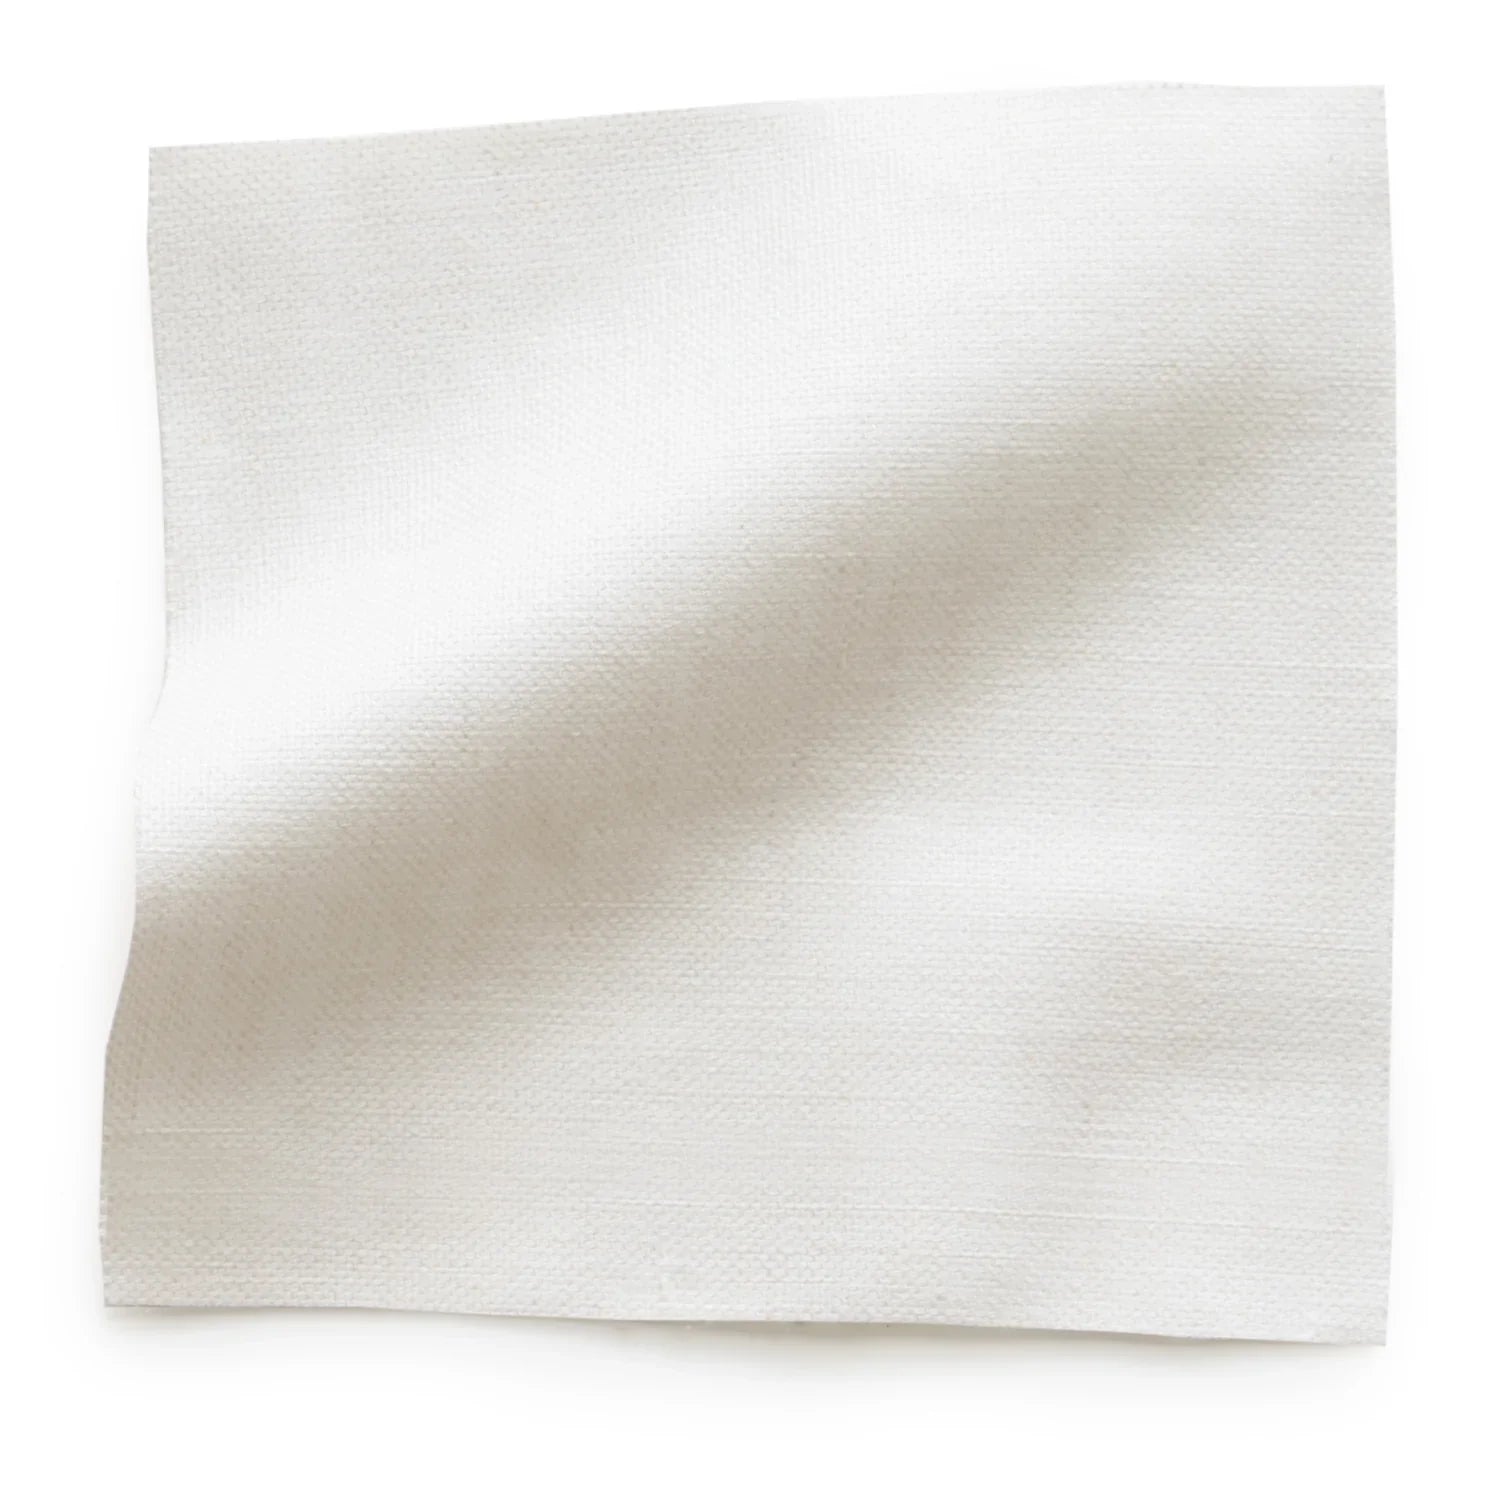 Flour Curtain - Grommet, 25"W x 99"L, Privacy Lining, No Trim